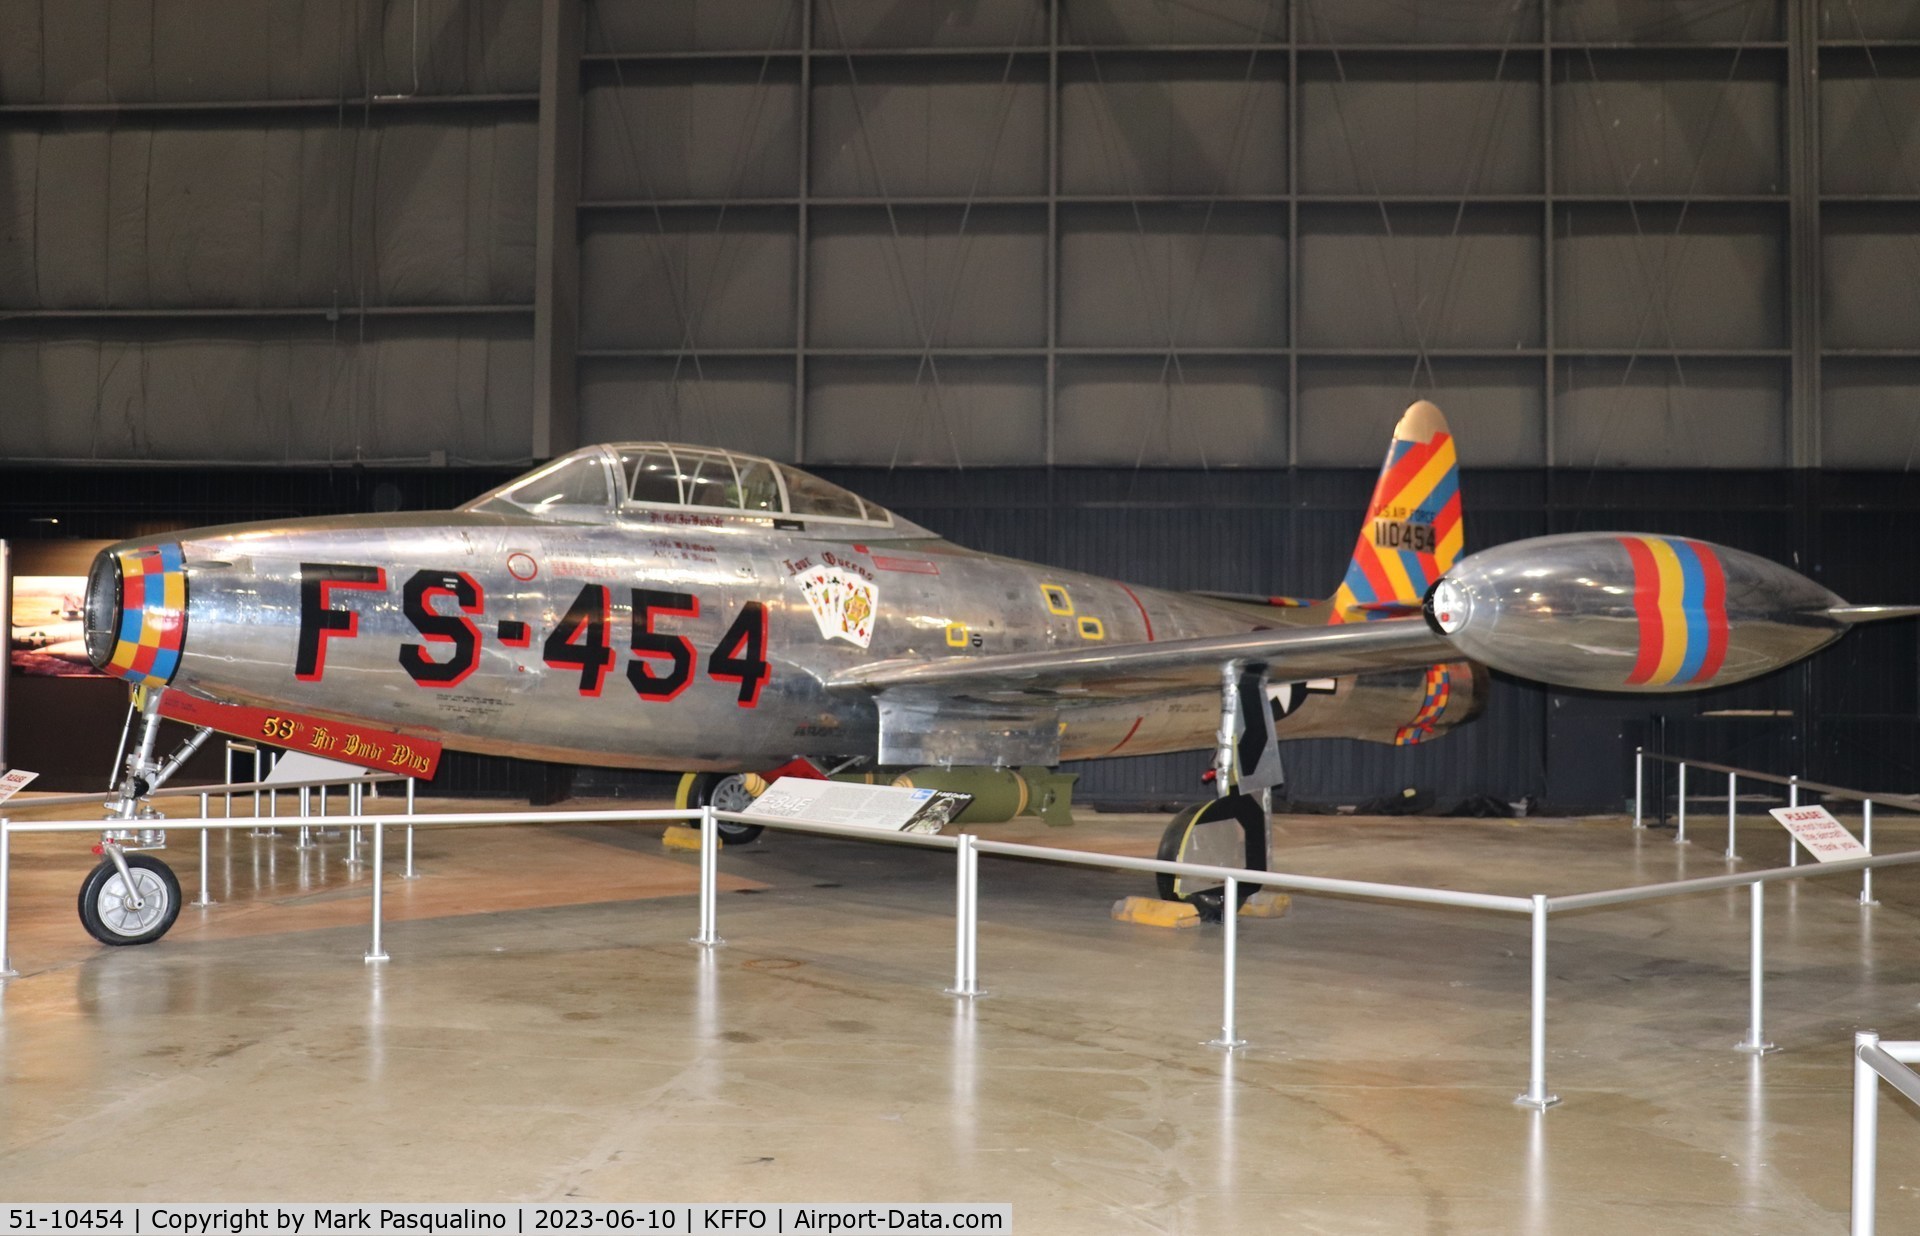 51-10454, 1951 Republic F-84G-16-RE C/N 2342-907B, Republic F-84G-16-RE